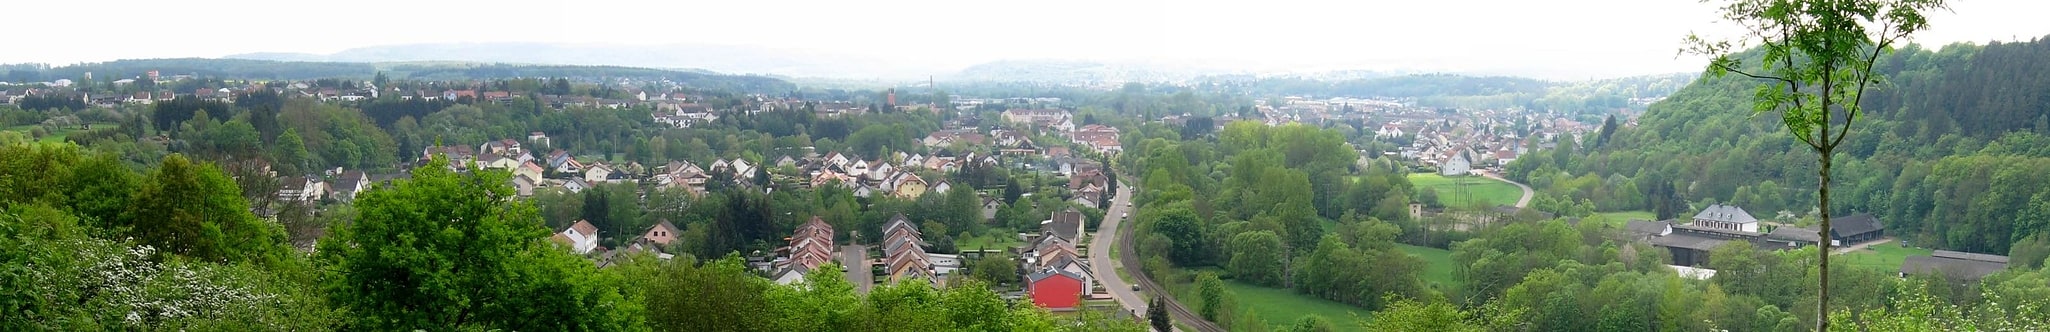 Schmelz, Niemcy